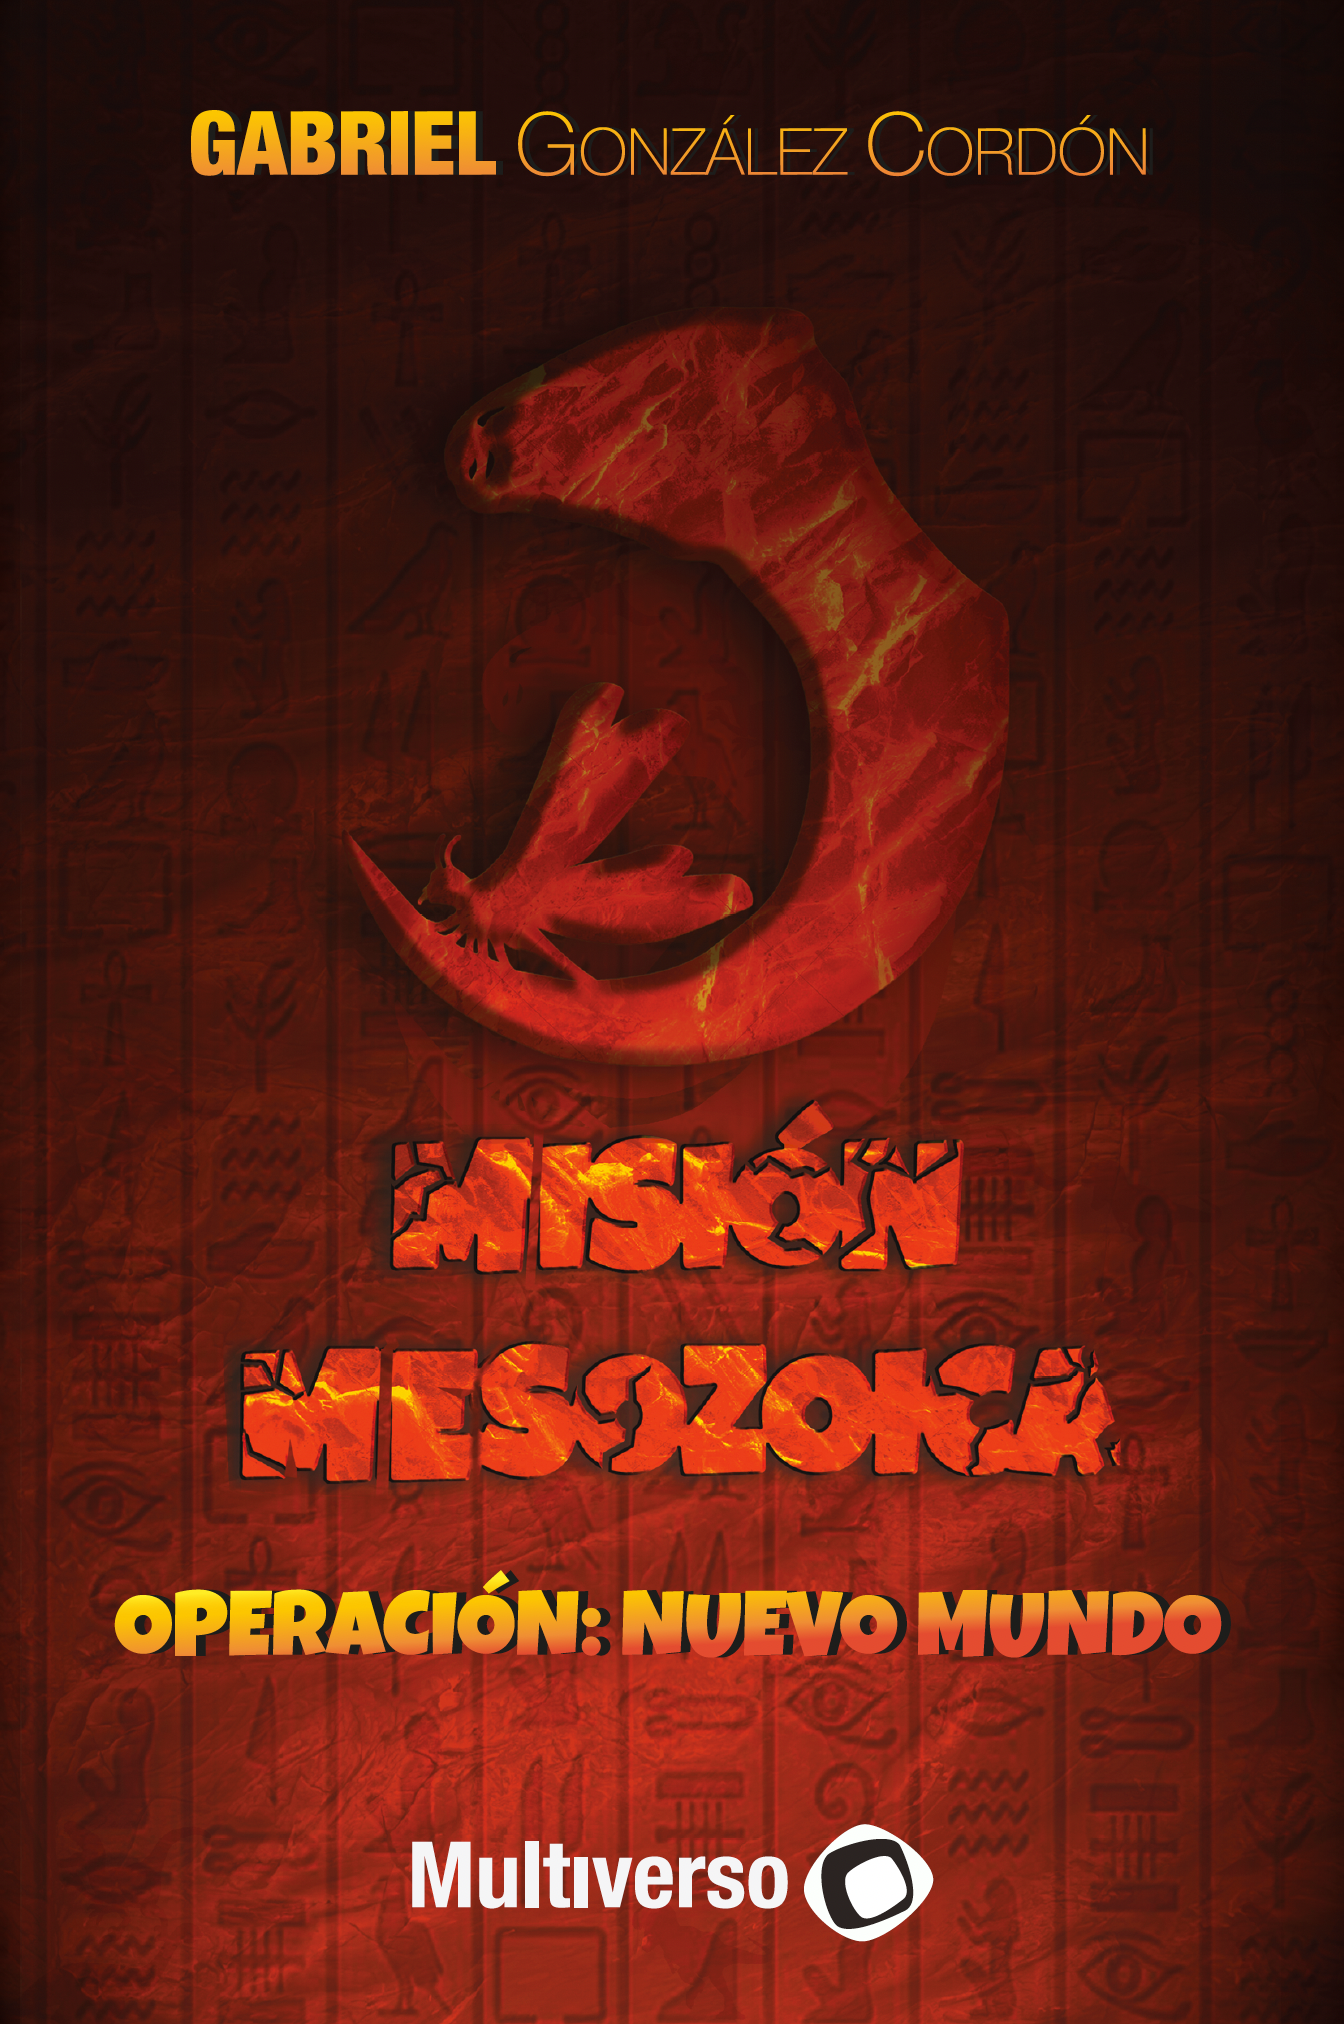 Misión Mesozoica: Operación Nuevo Mundo